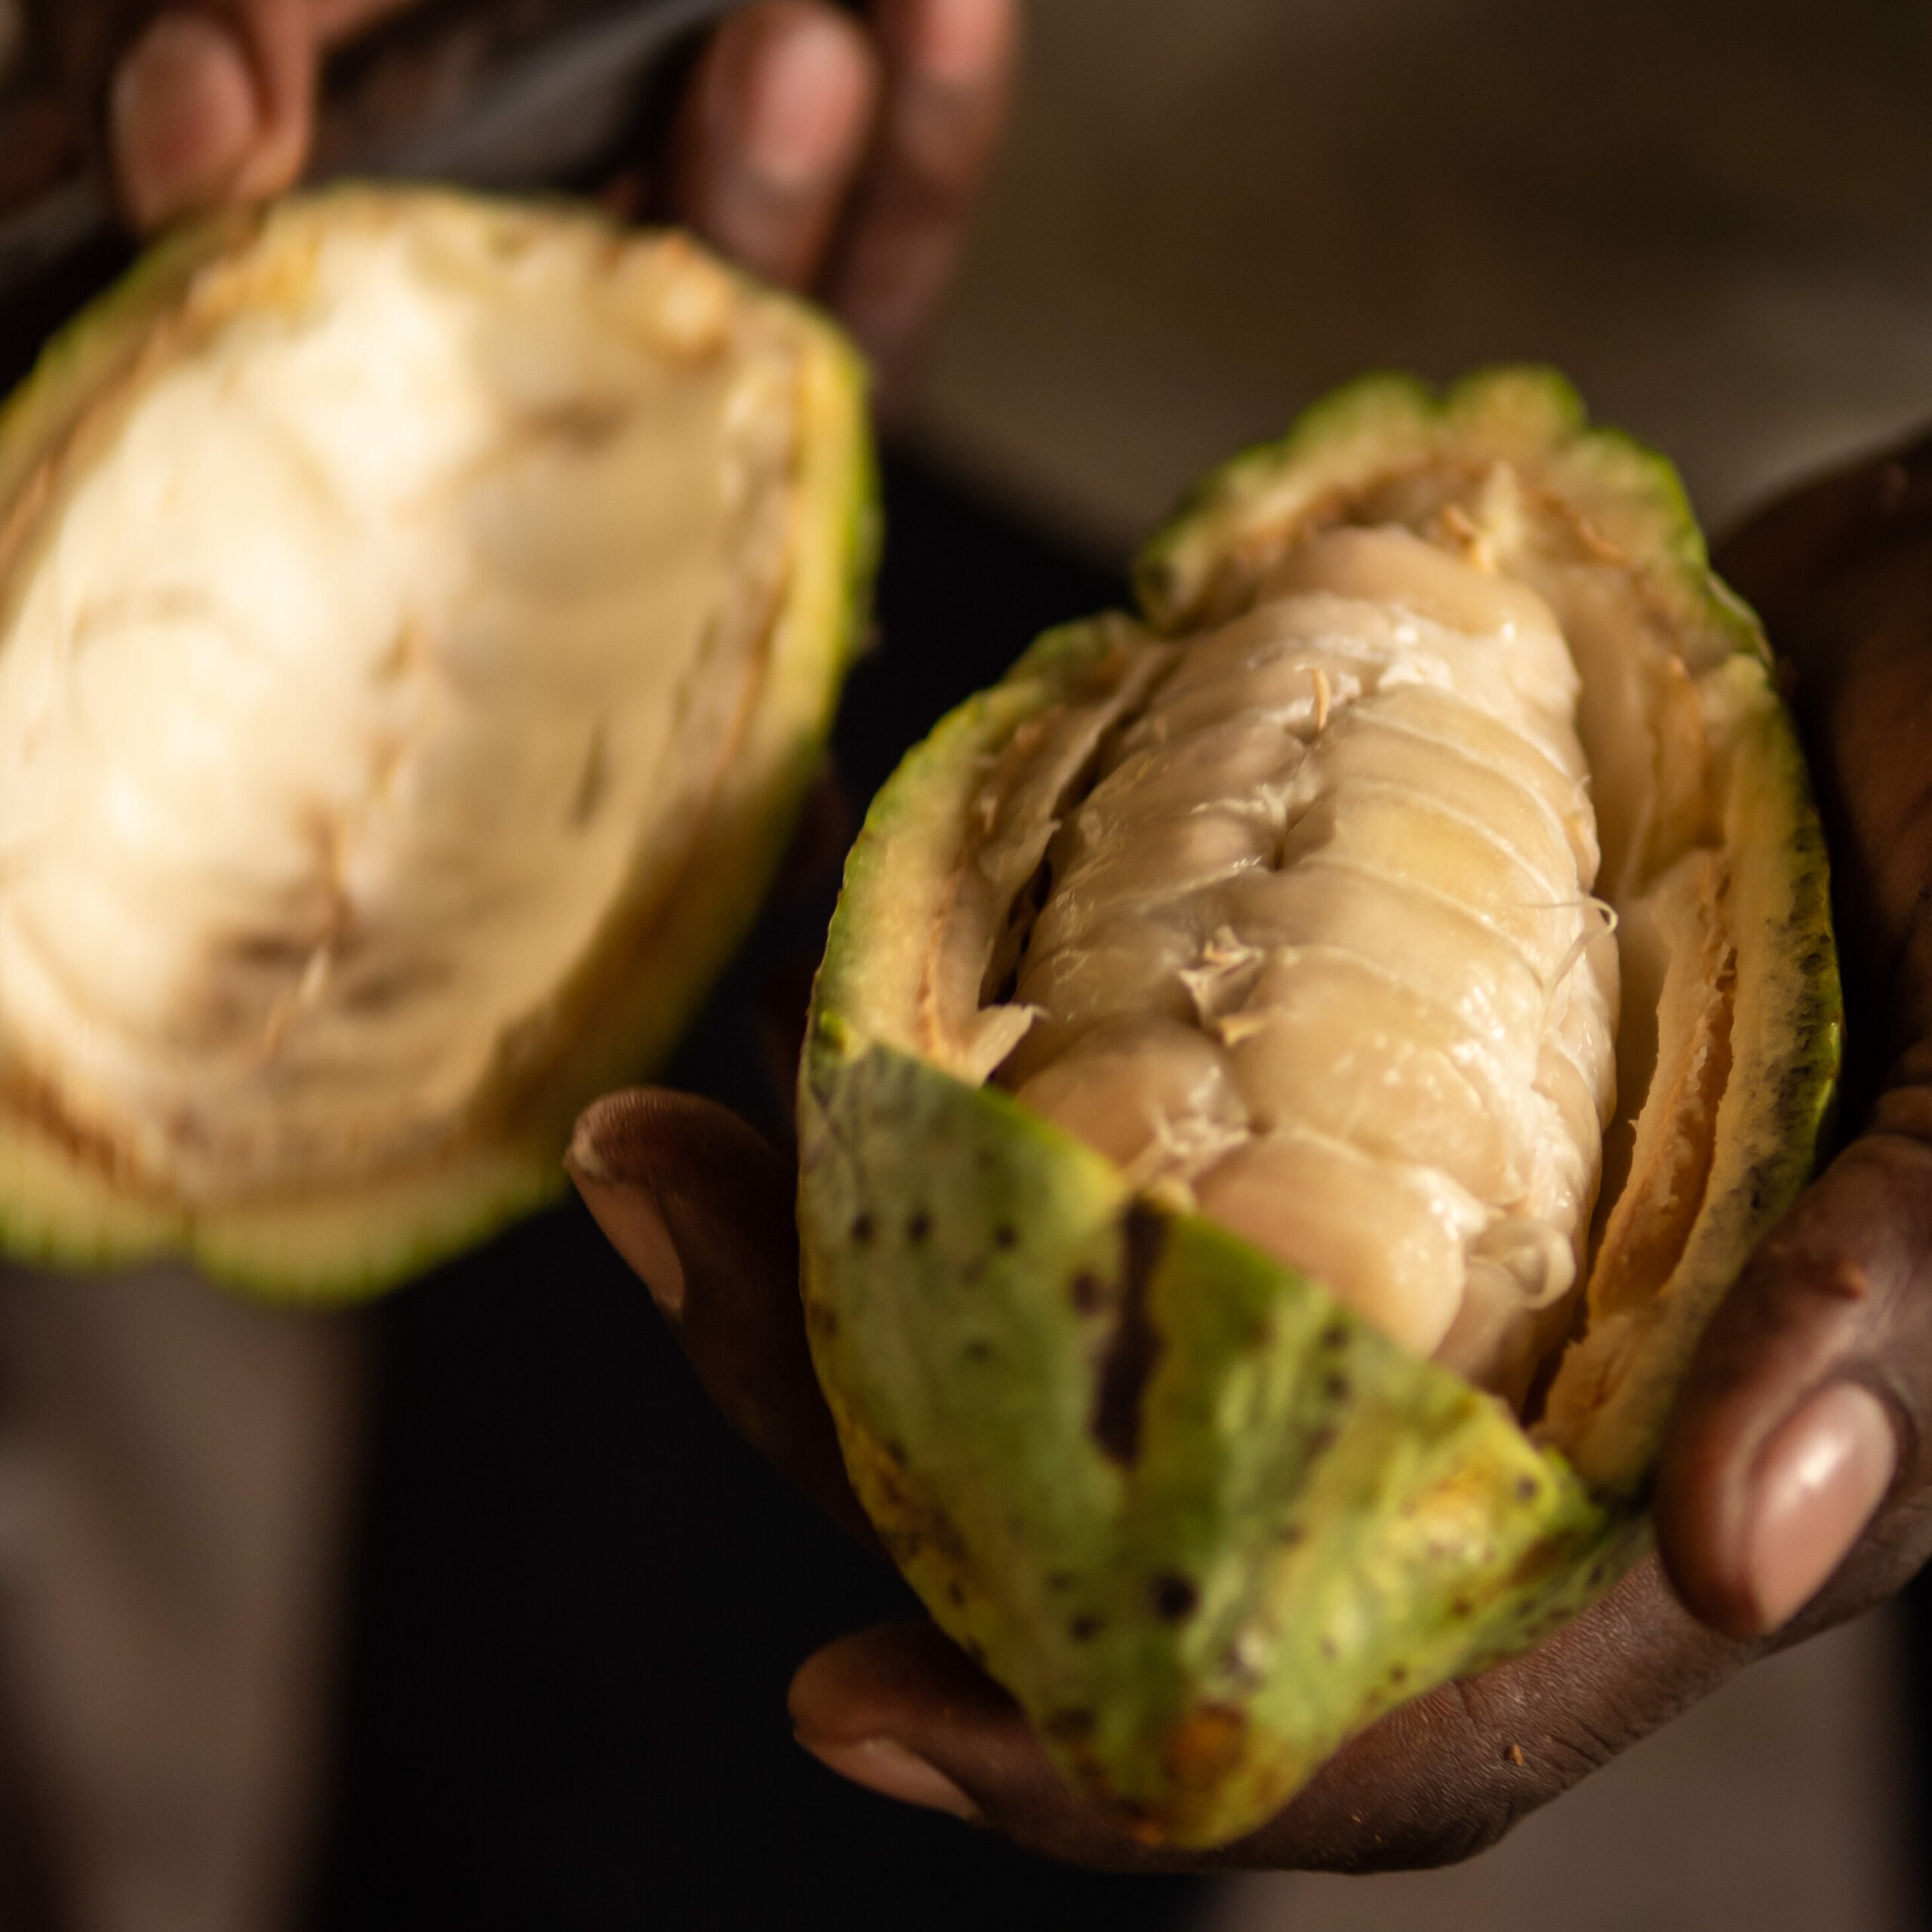 Cacao bio et chocolat équitable : quand la situation des planteurs rencontre enfin des alternatives @etresensibleasonenvironnement - photo de gebana